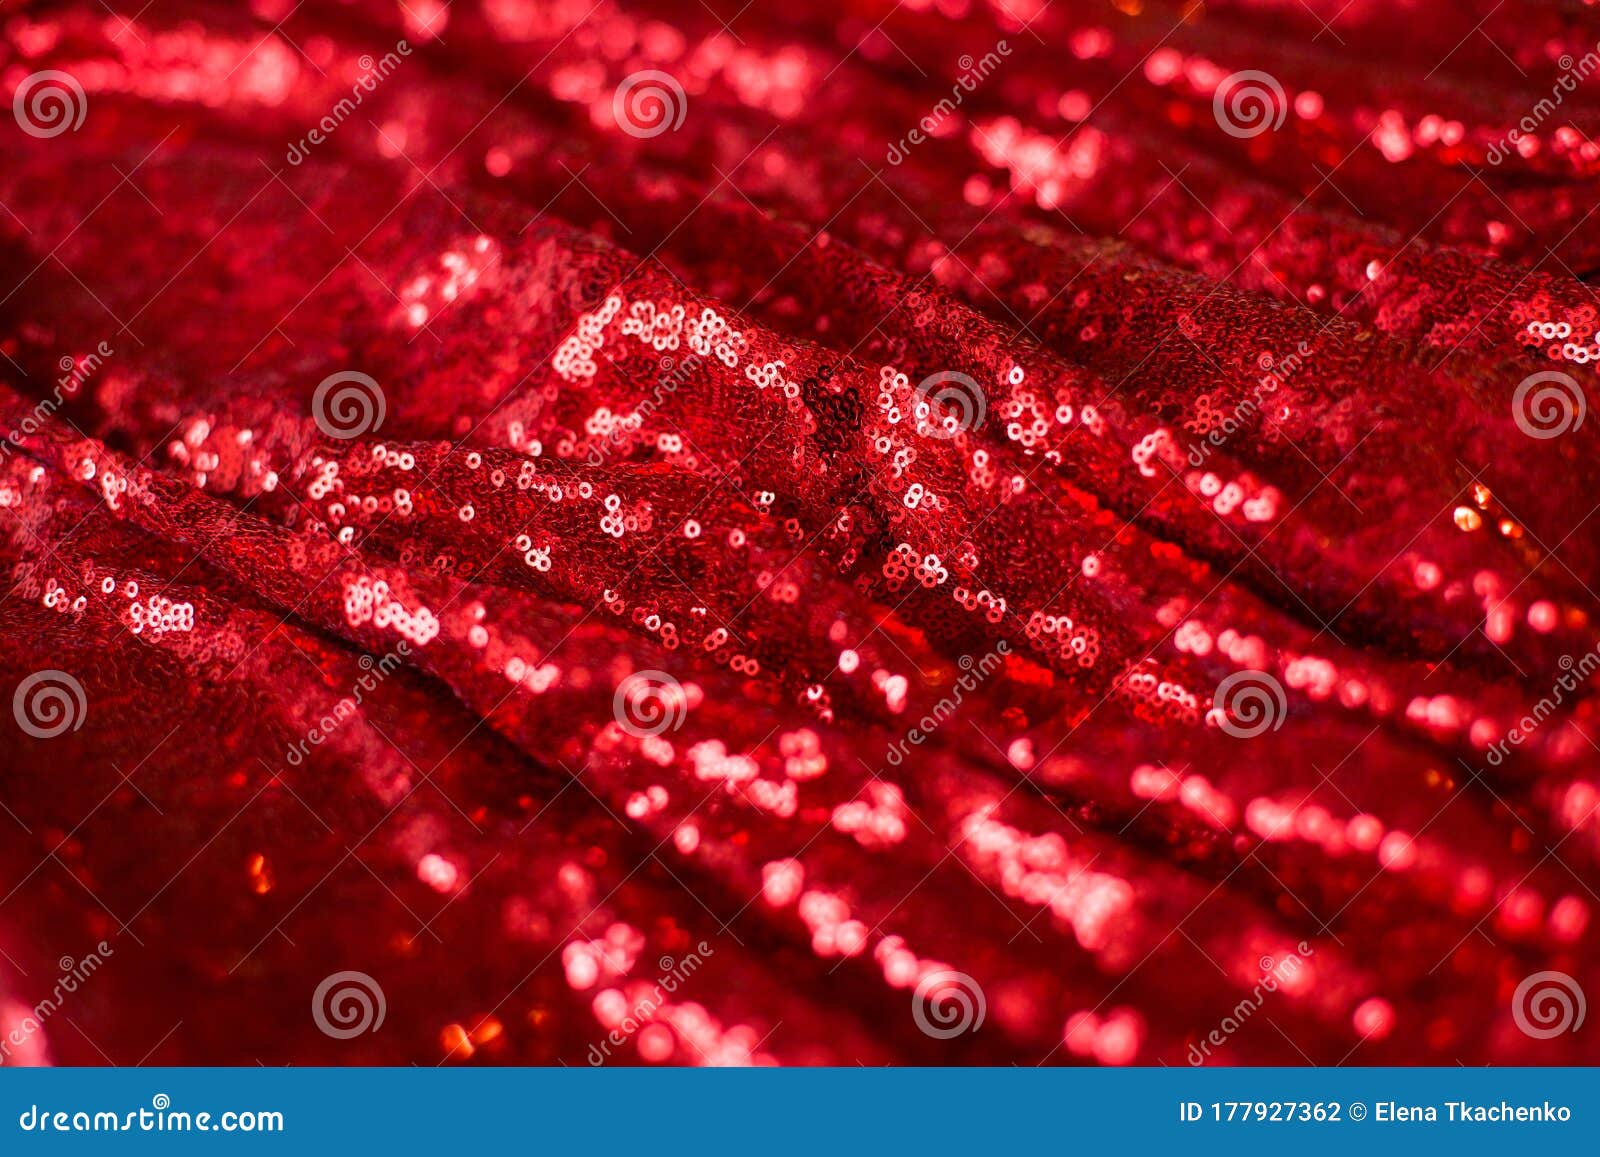 Vải đỏ bóng sáng với nếp gấp là sự lựa chọn hoàn hảo cho bất kỳ áo dài, váy hay đầm nào. Với độ sáng bóng và nếp gấp tinh tế, vải này sẽ khiến bạn thật sự nổi bật trong mỗi bức ảnh. Hãy cùng chắc chắn rằng vải đỏ bóng sáng với nếp gấp sẽ không làm bạn thất vọng.